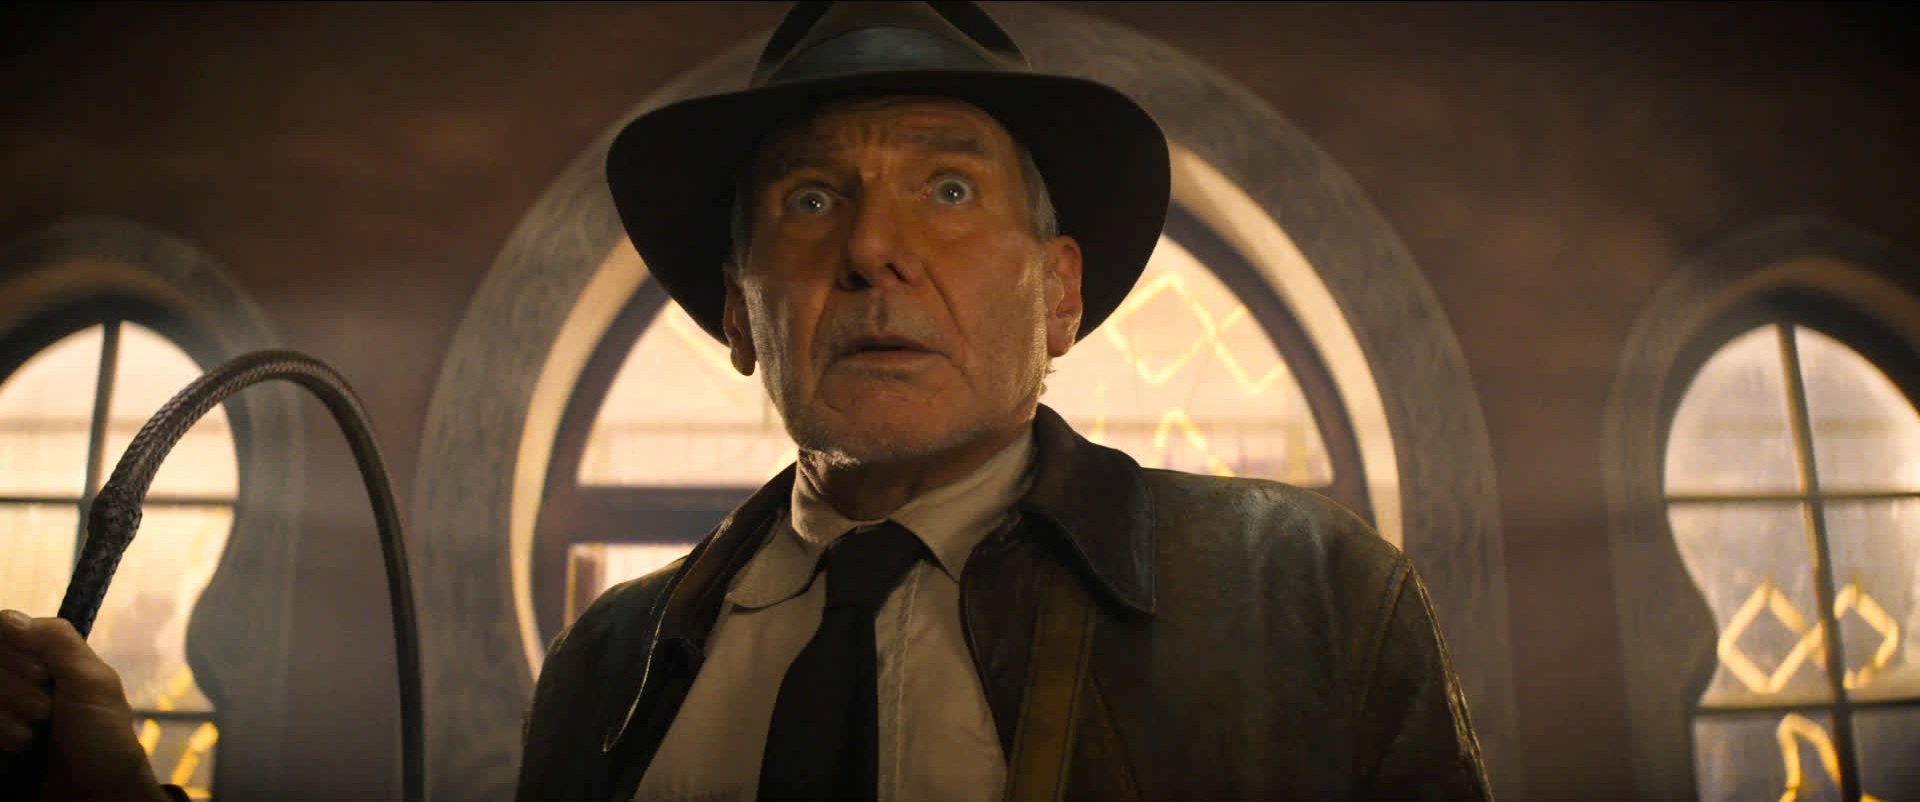 Quando Indiana Jones e a Relíquia do Destino chega ao streaming?